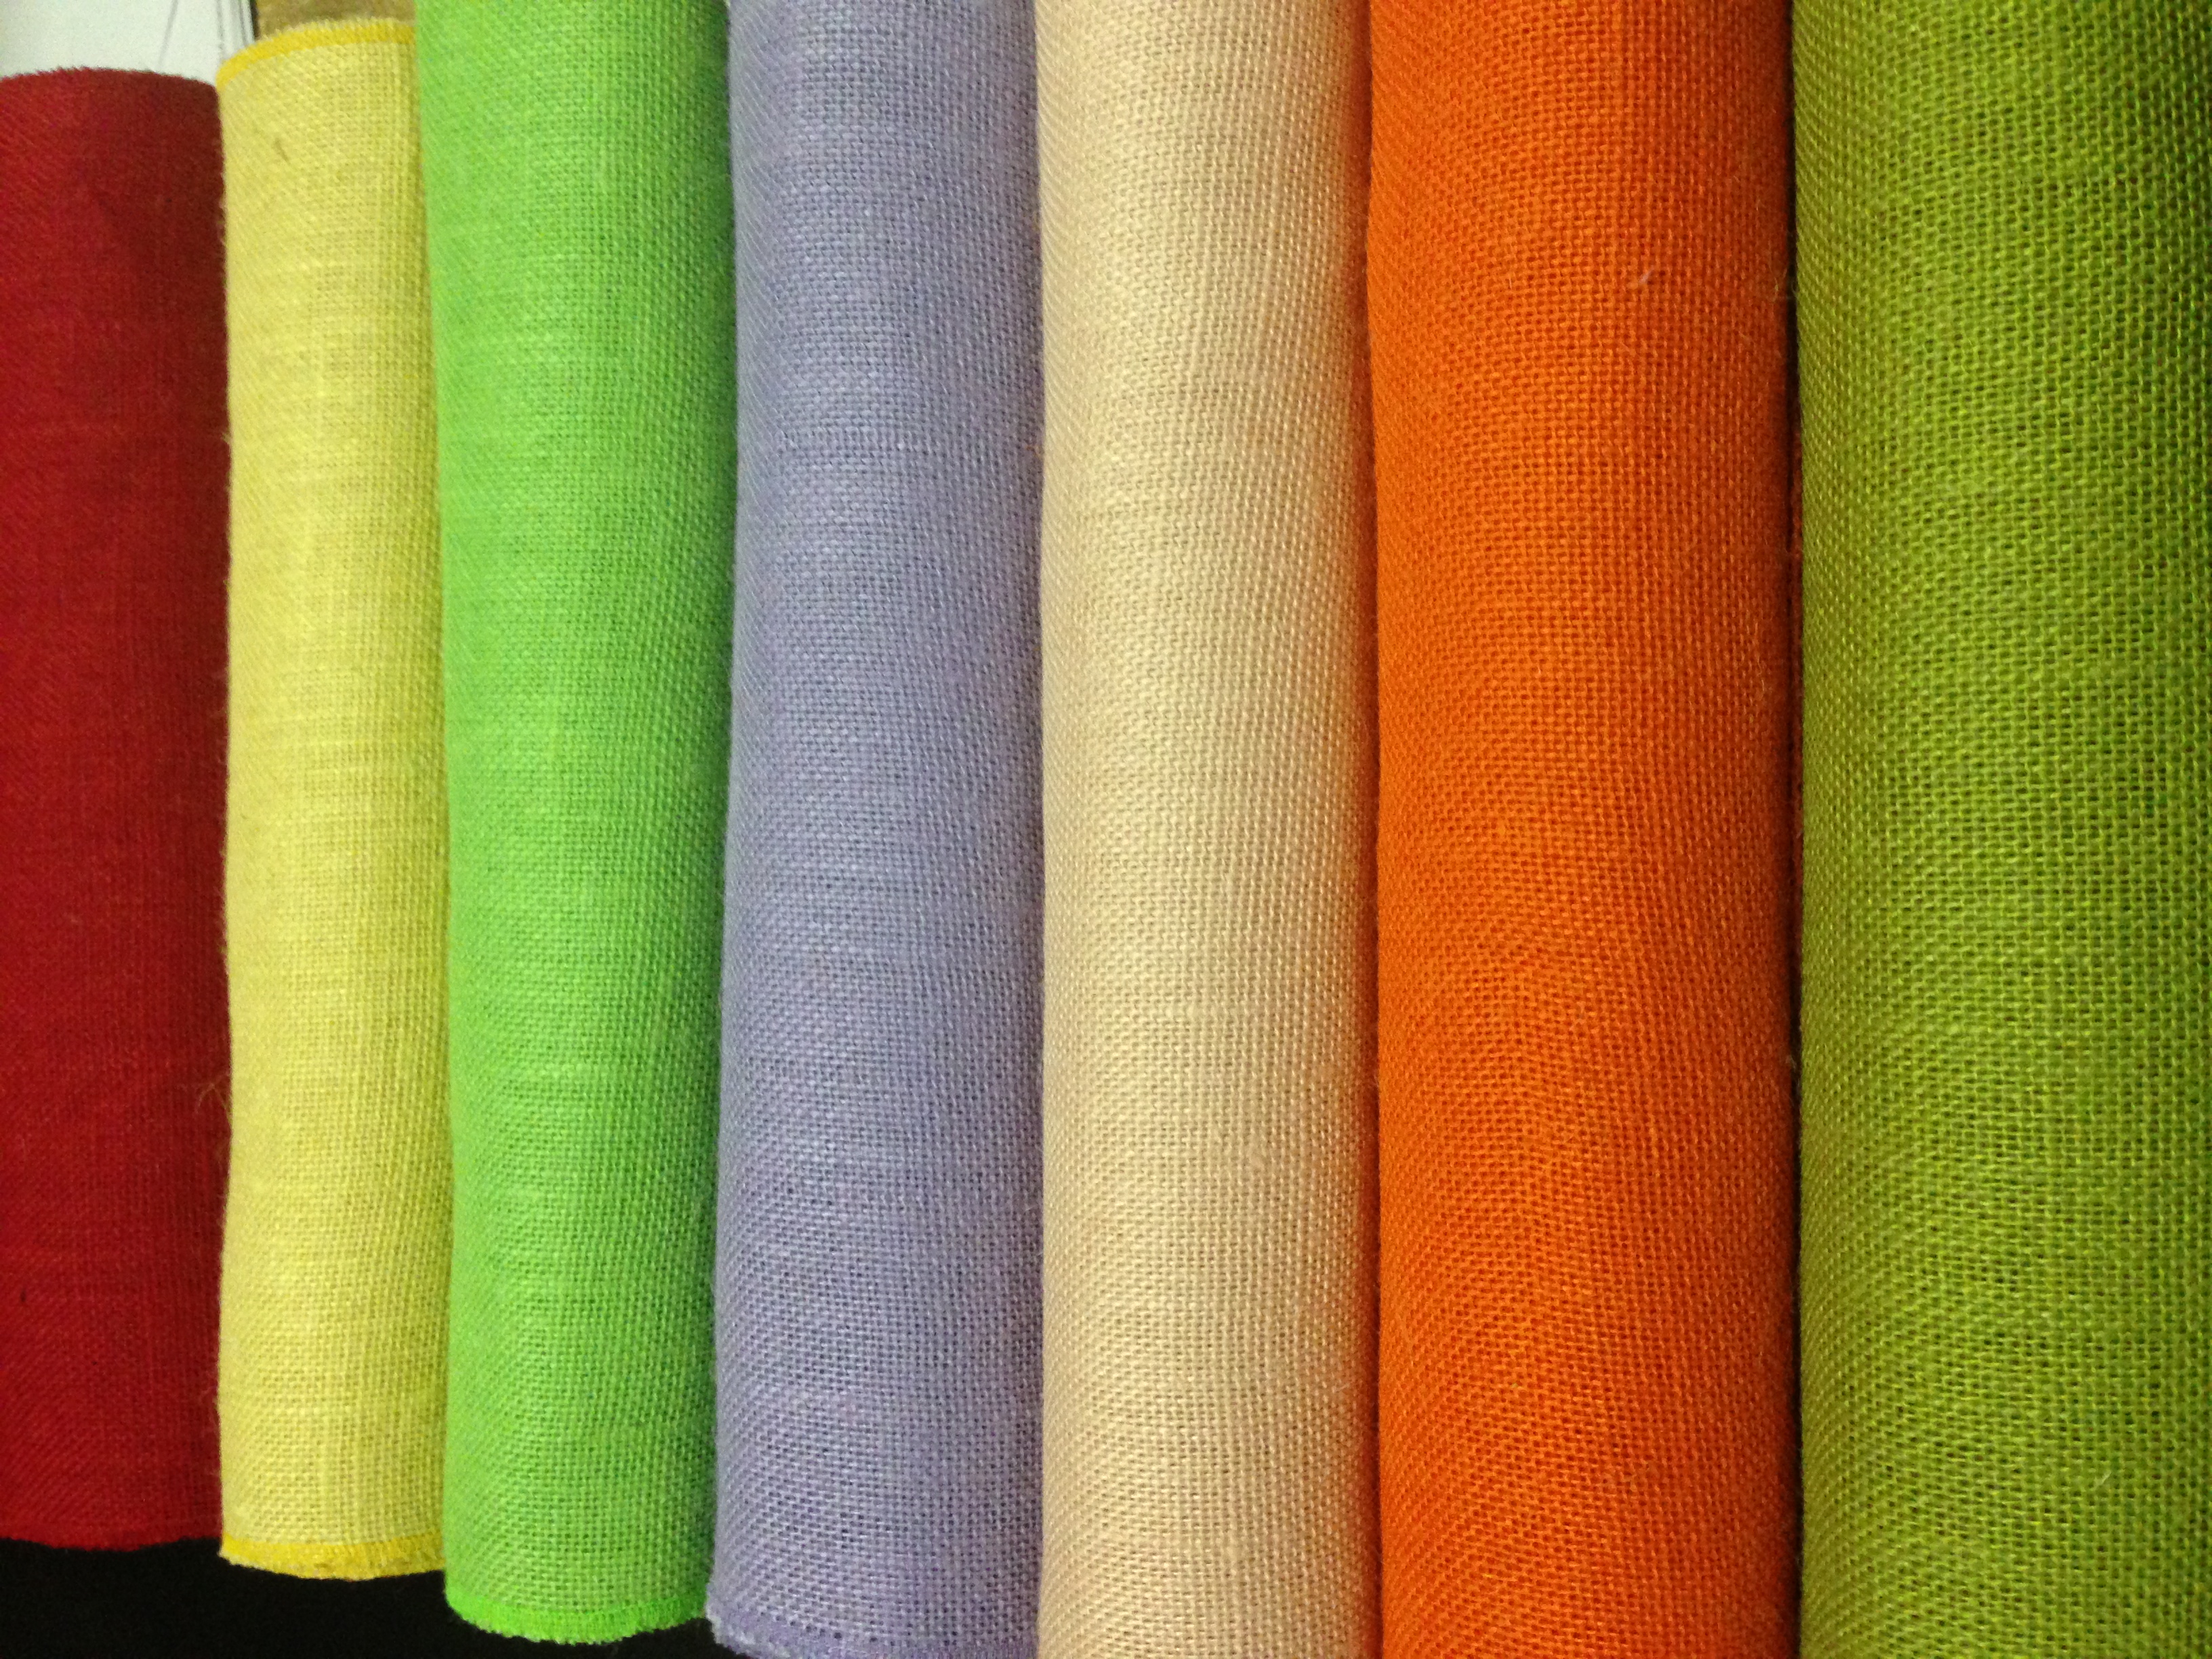 Colored Burlap Fabric Wholesale - Processed Burlap